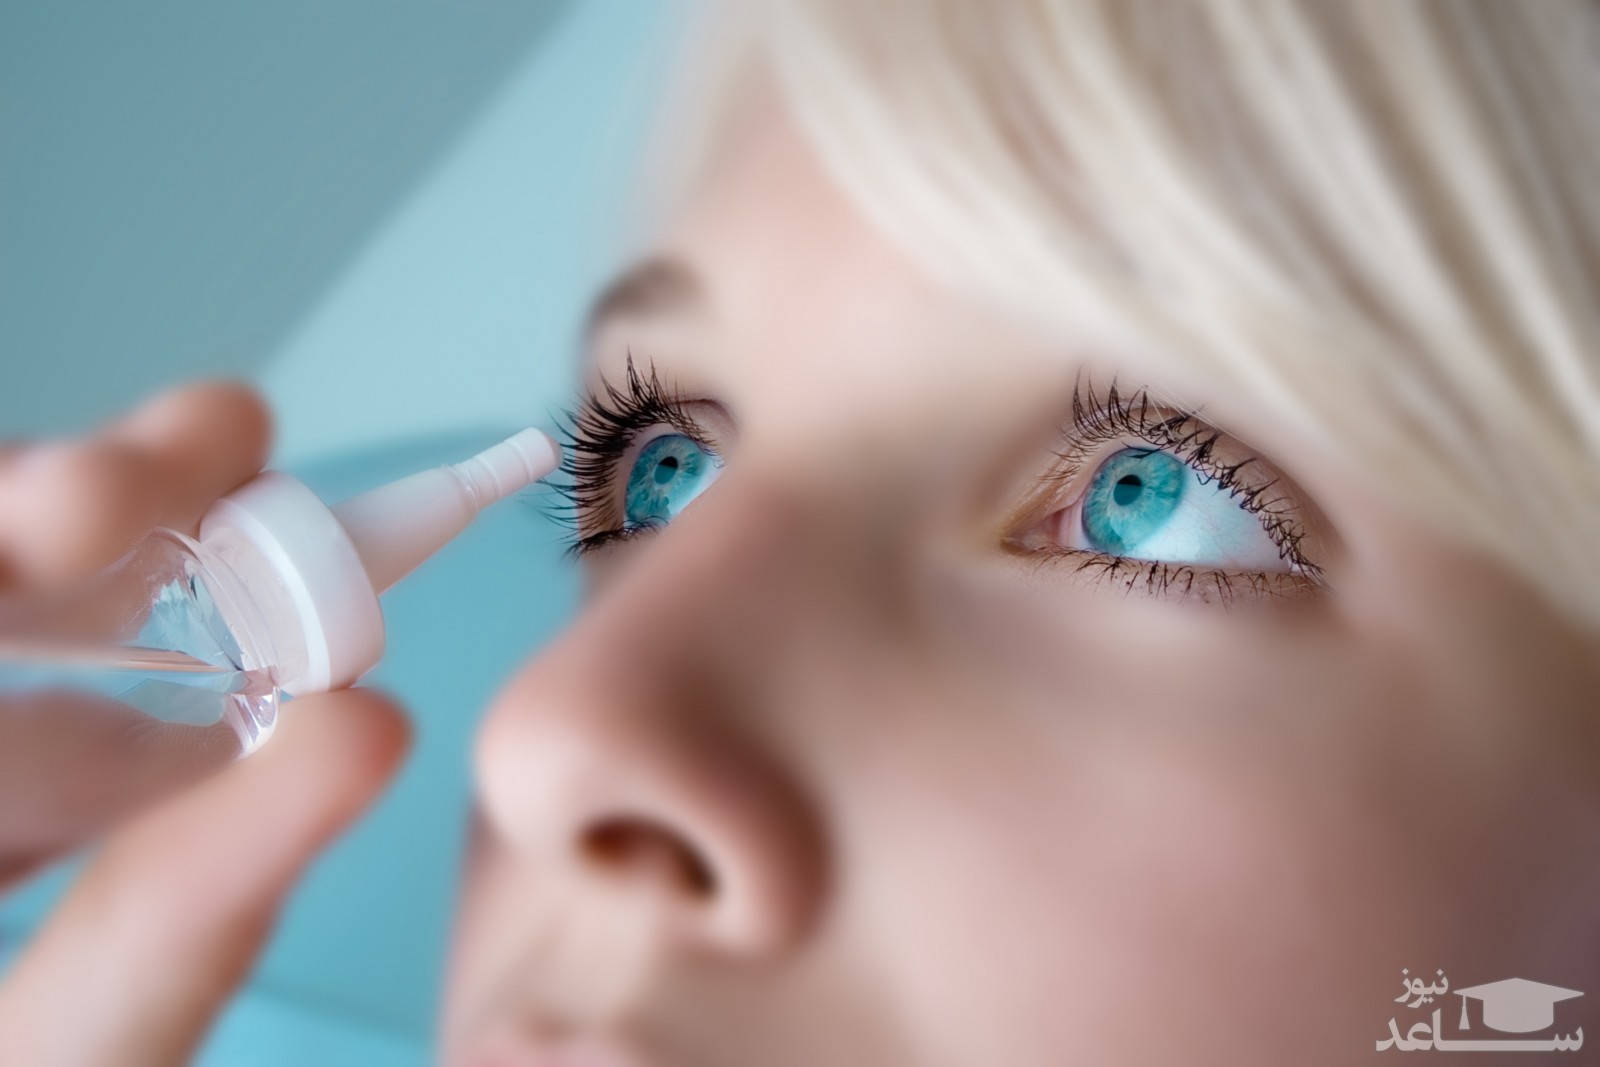 میزان و نحوه مصرف قطره چشمی زالابایوست